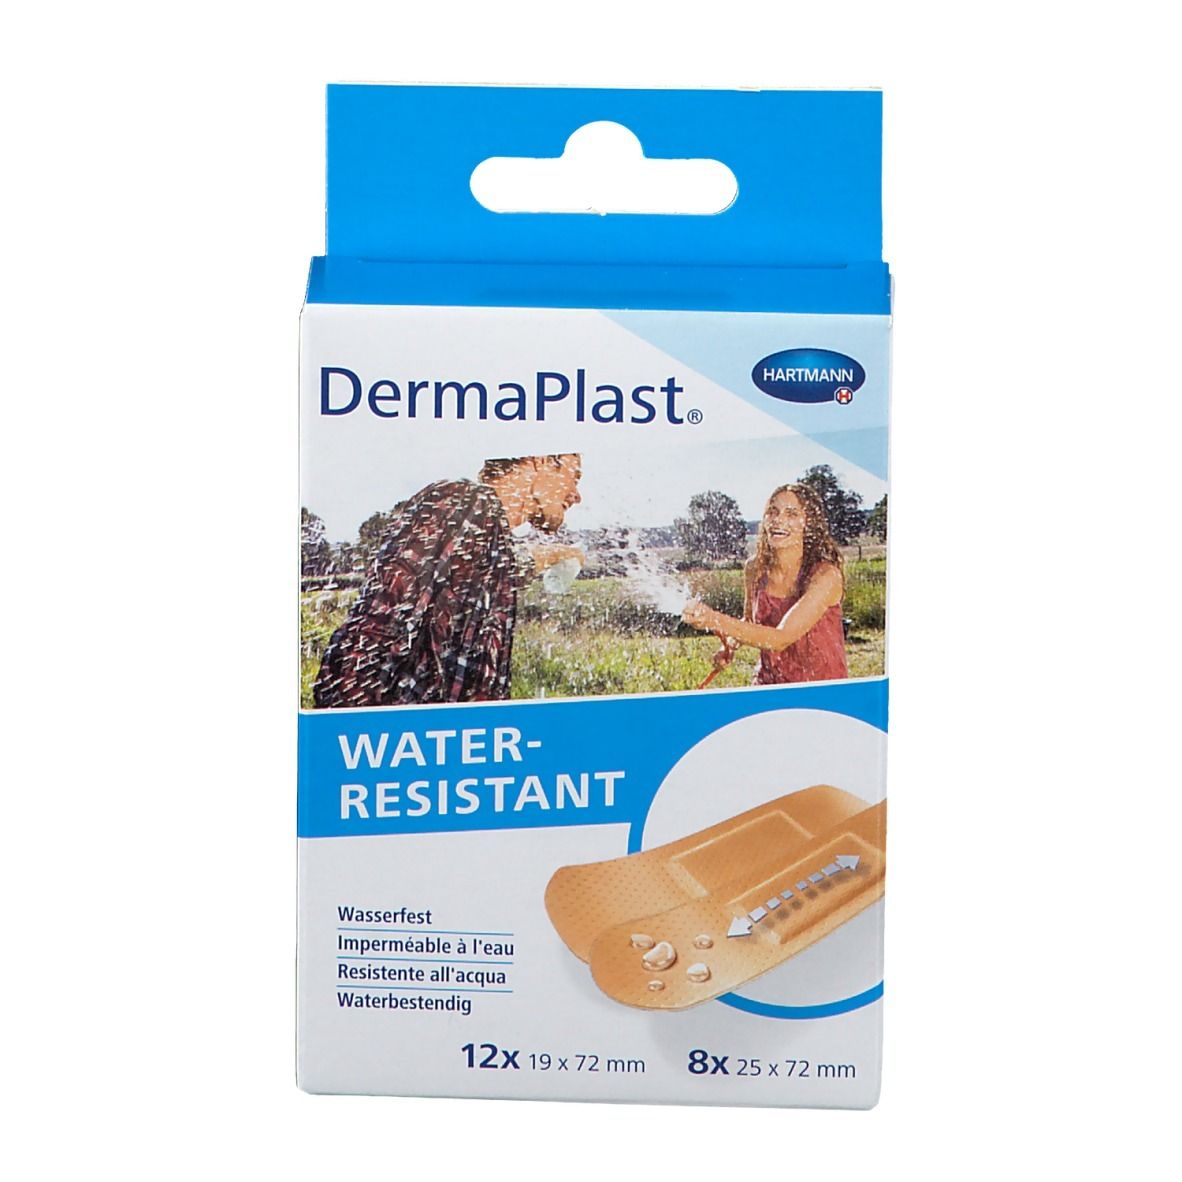 DermaPlast® Water-resistant Pflasterstrips 2 Größen